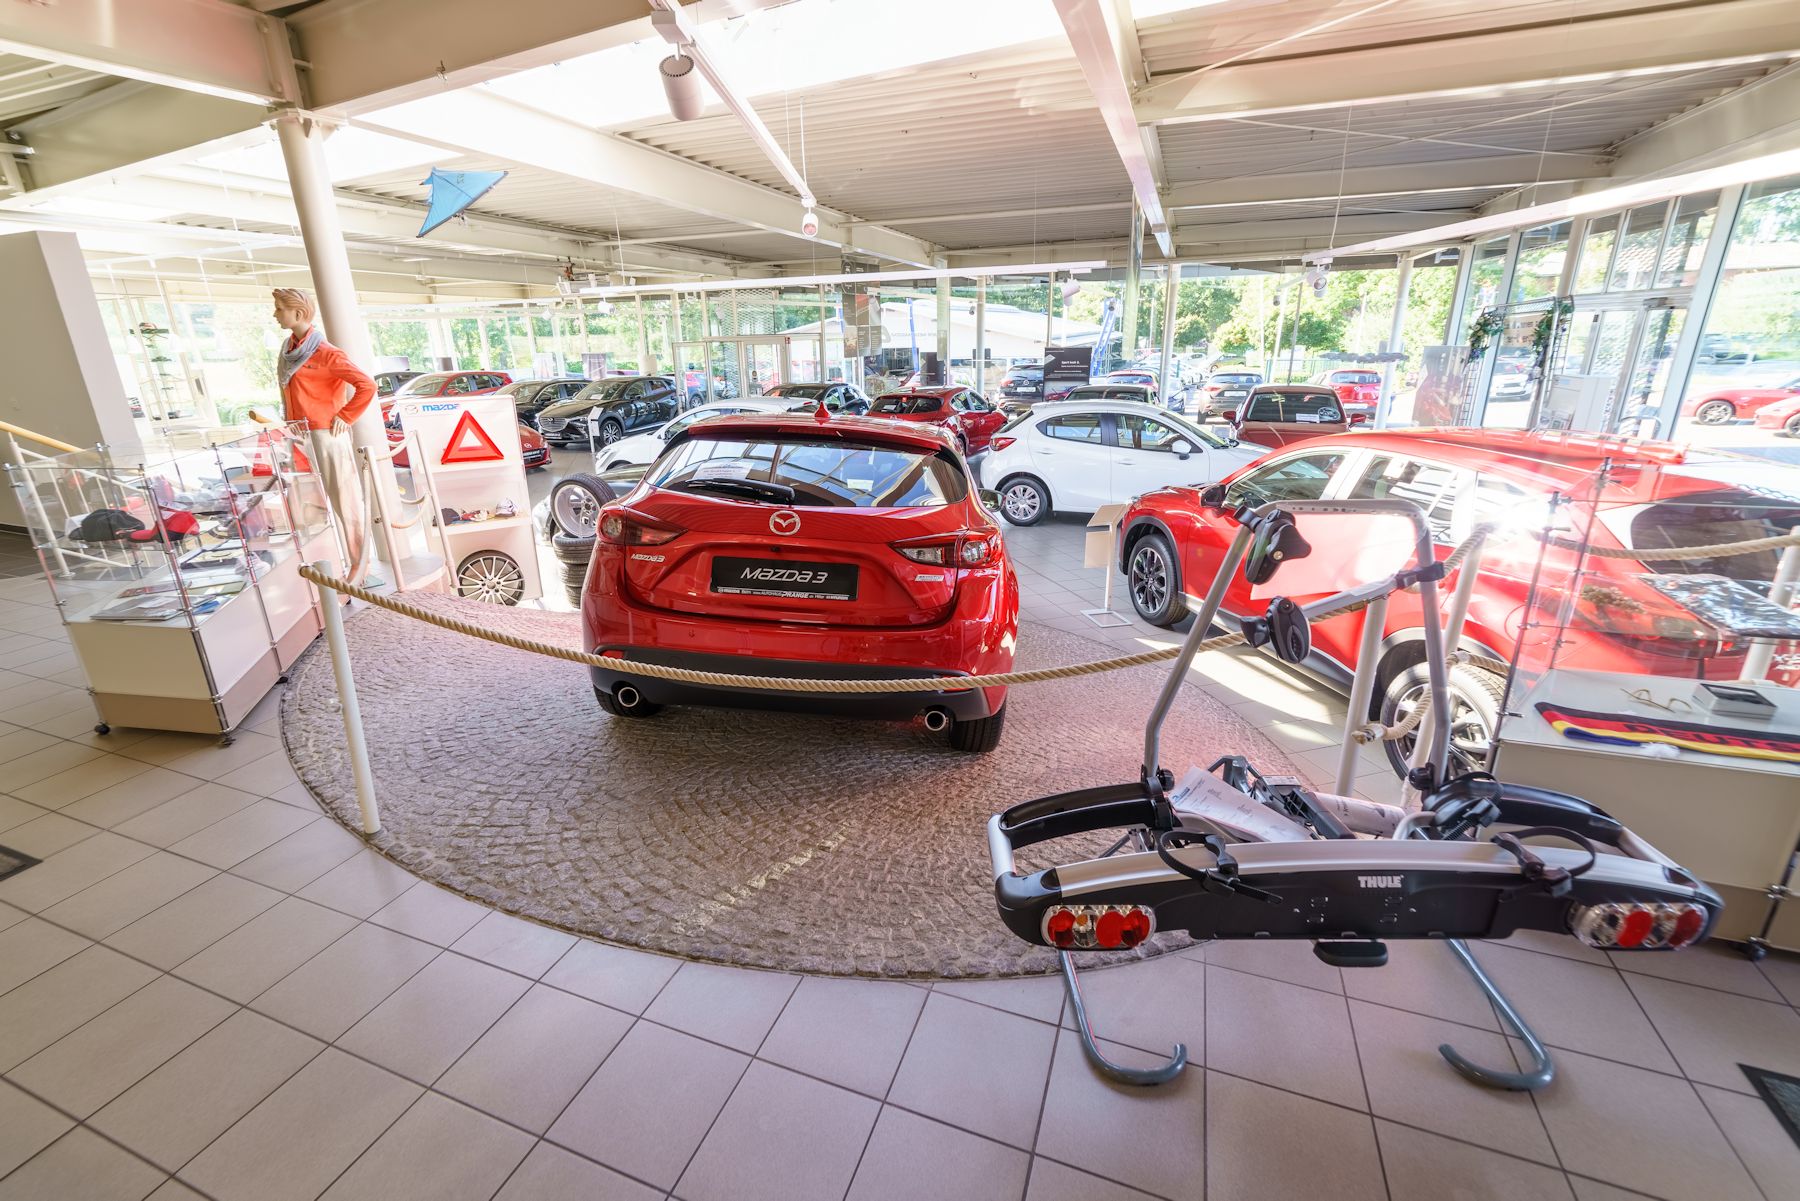 Mazda CX-5 KE bis 2017 Ladekantenschutz Edelstahl Kofferraum - Autohaus  Prange Online Shop